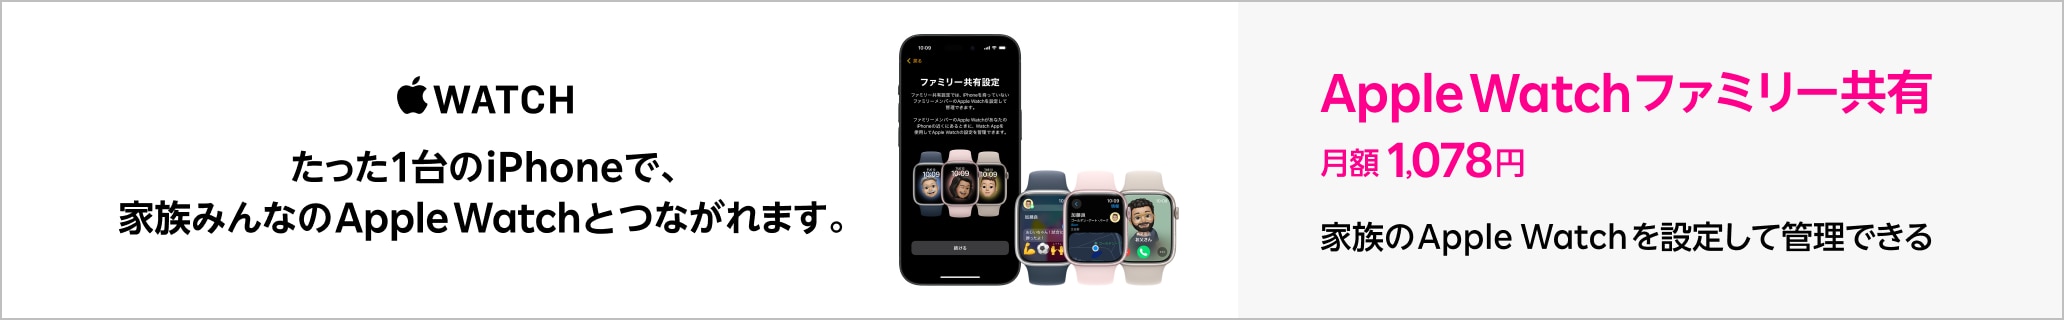 「Apple Watch ファミリー共有」たった1台のiPhoneで、家族みんなのApple Watchとつながれます。